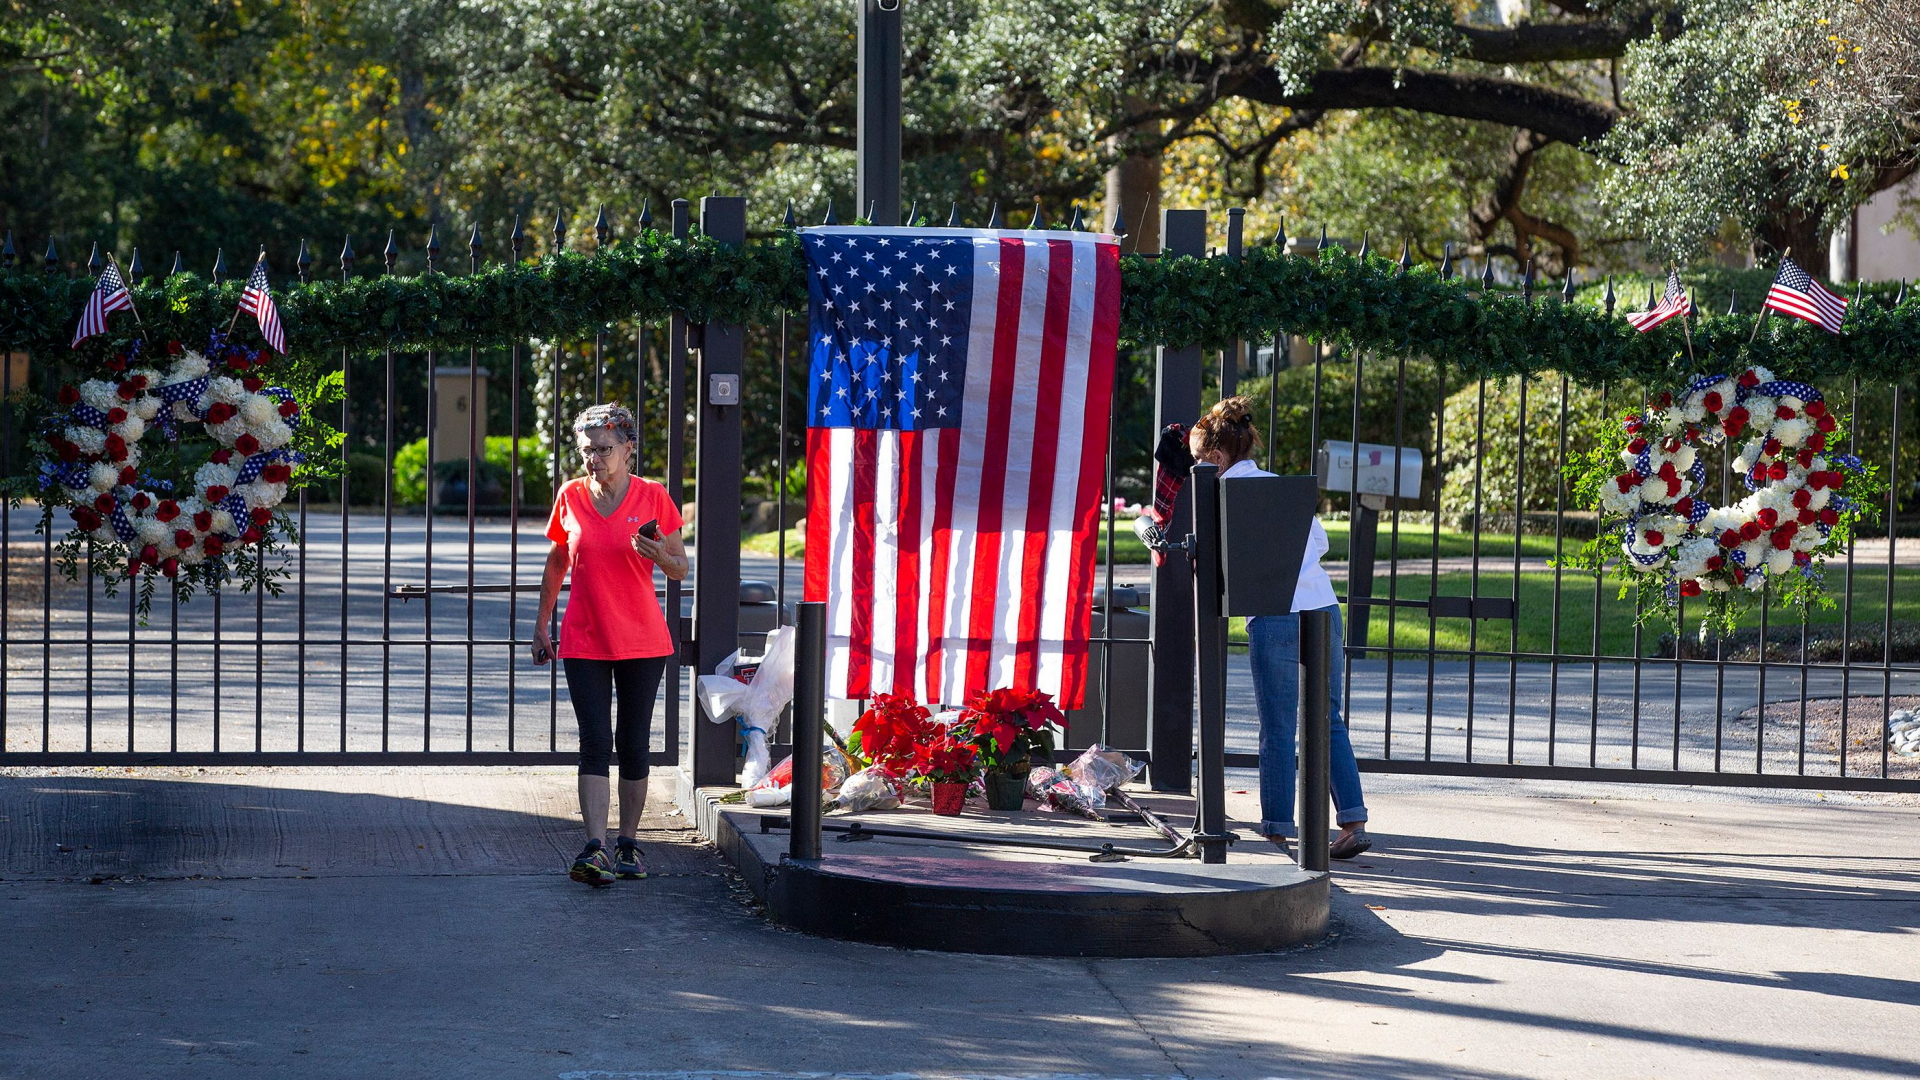 vor dem Wohnhaus des verstorbenen Präsidenten George H.W. Bush: Blumen und eine US-Flagge am Zaun. | Bildquelle: AFP